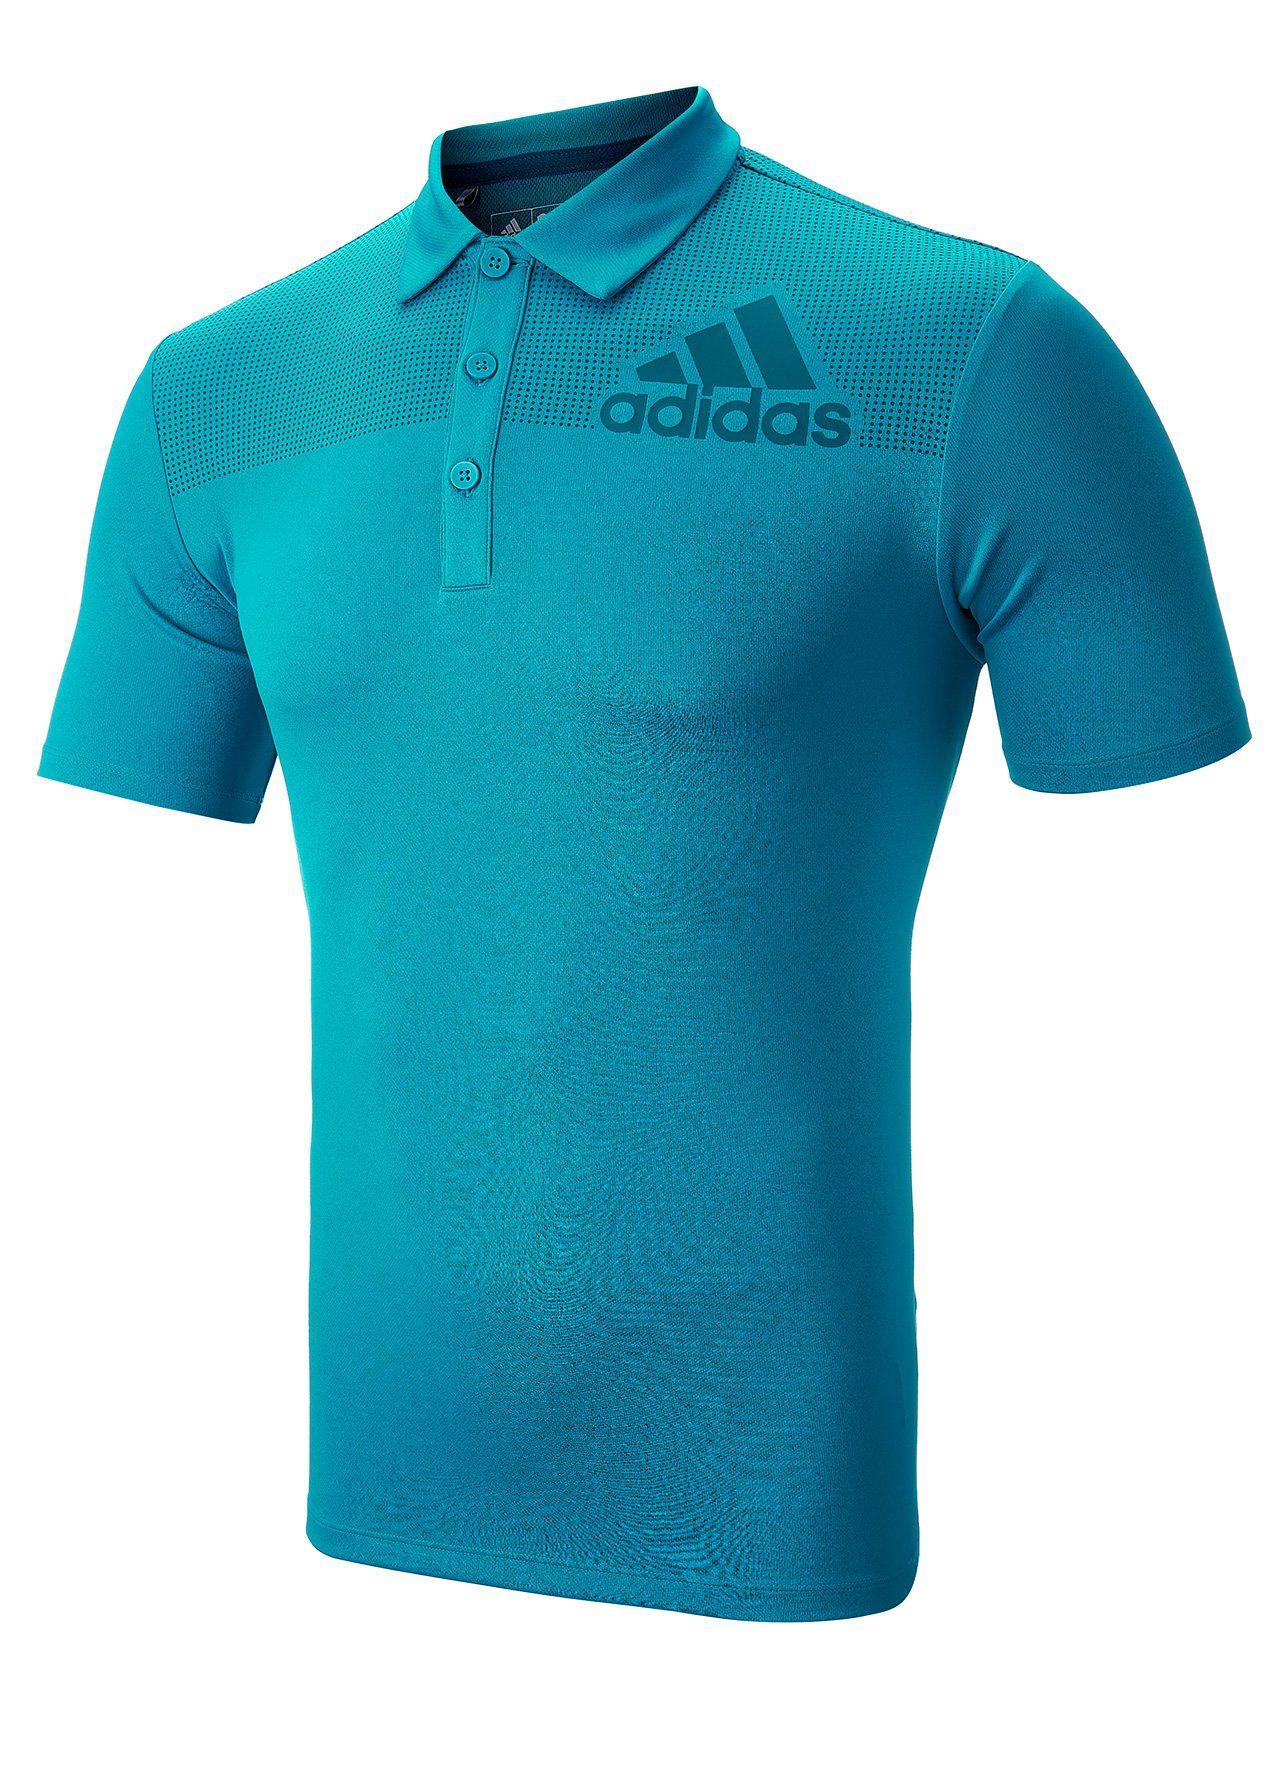 adidasGolf Logo - Golf Clothing Golf Big Logo Print Polo Shirt D582